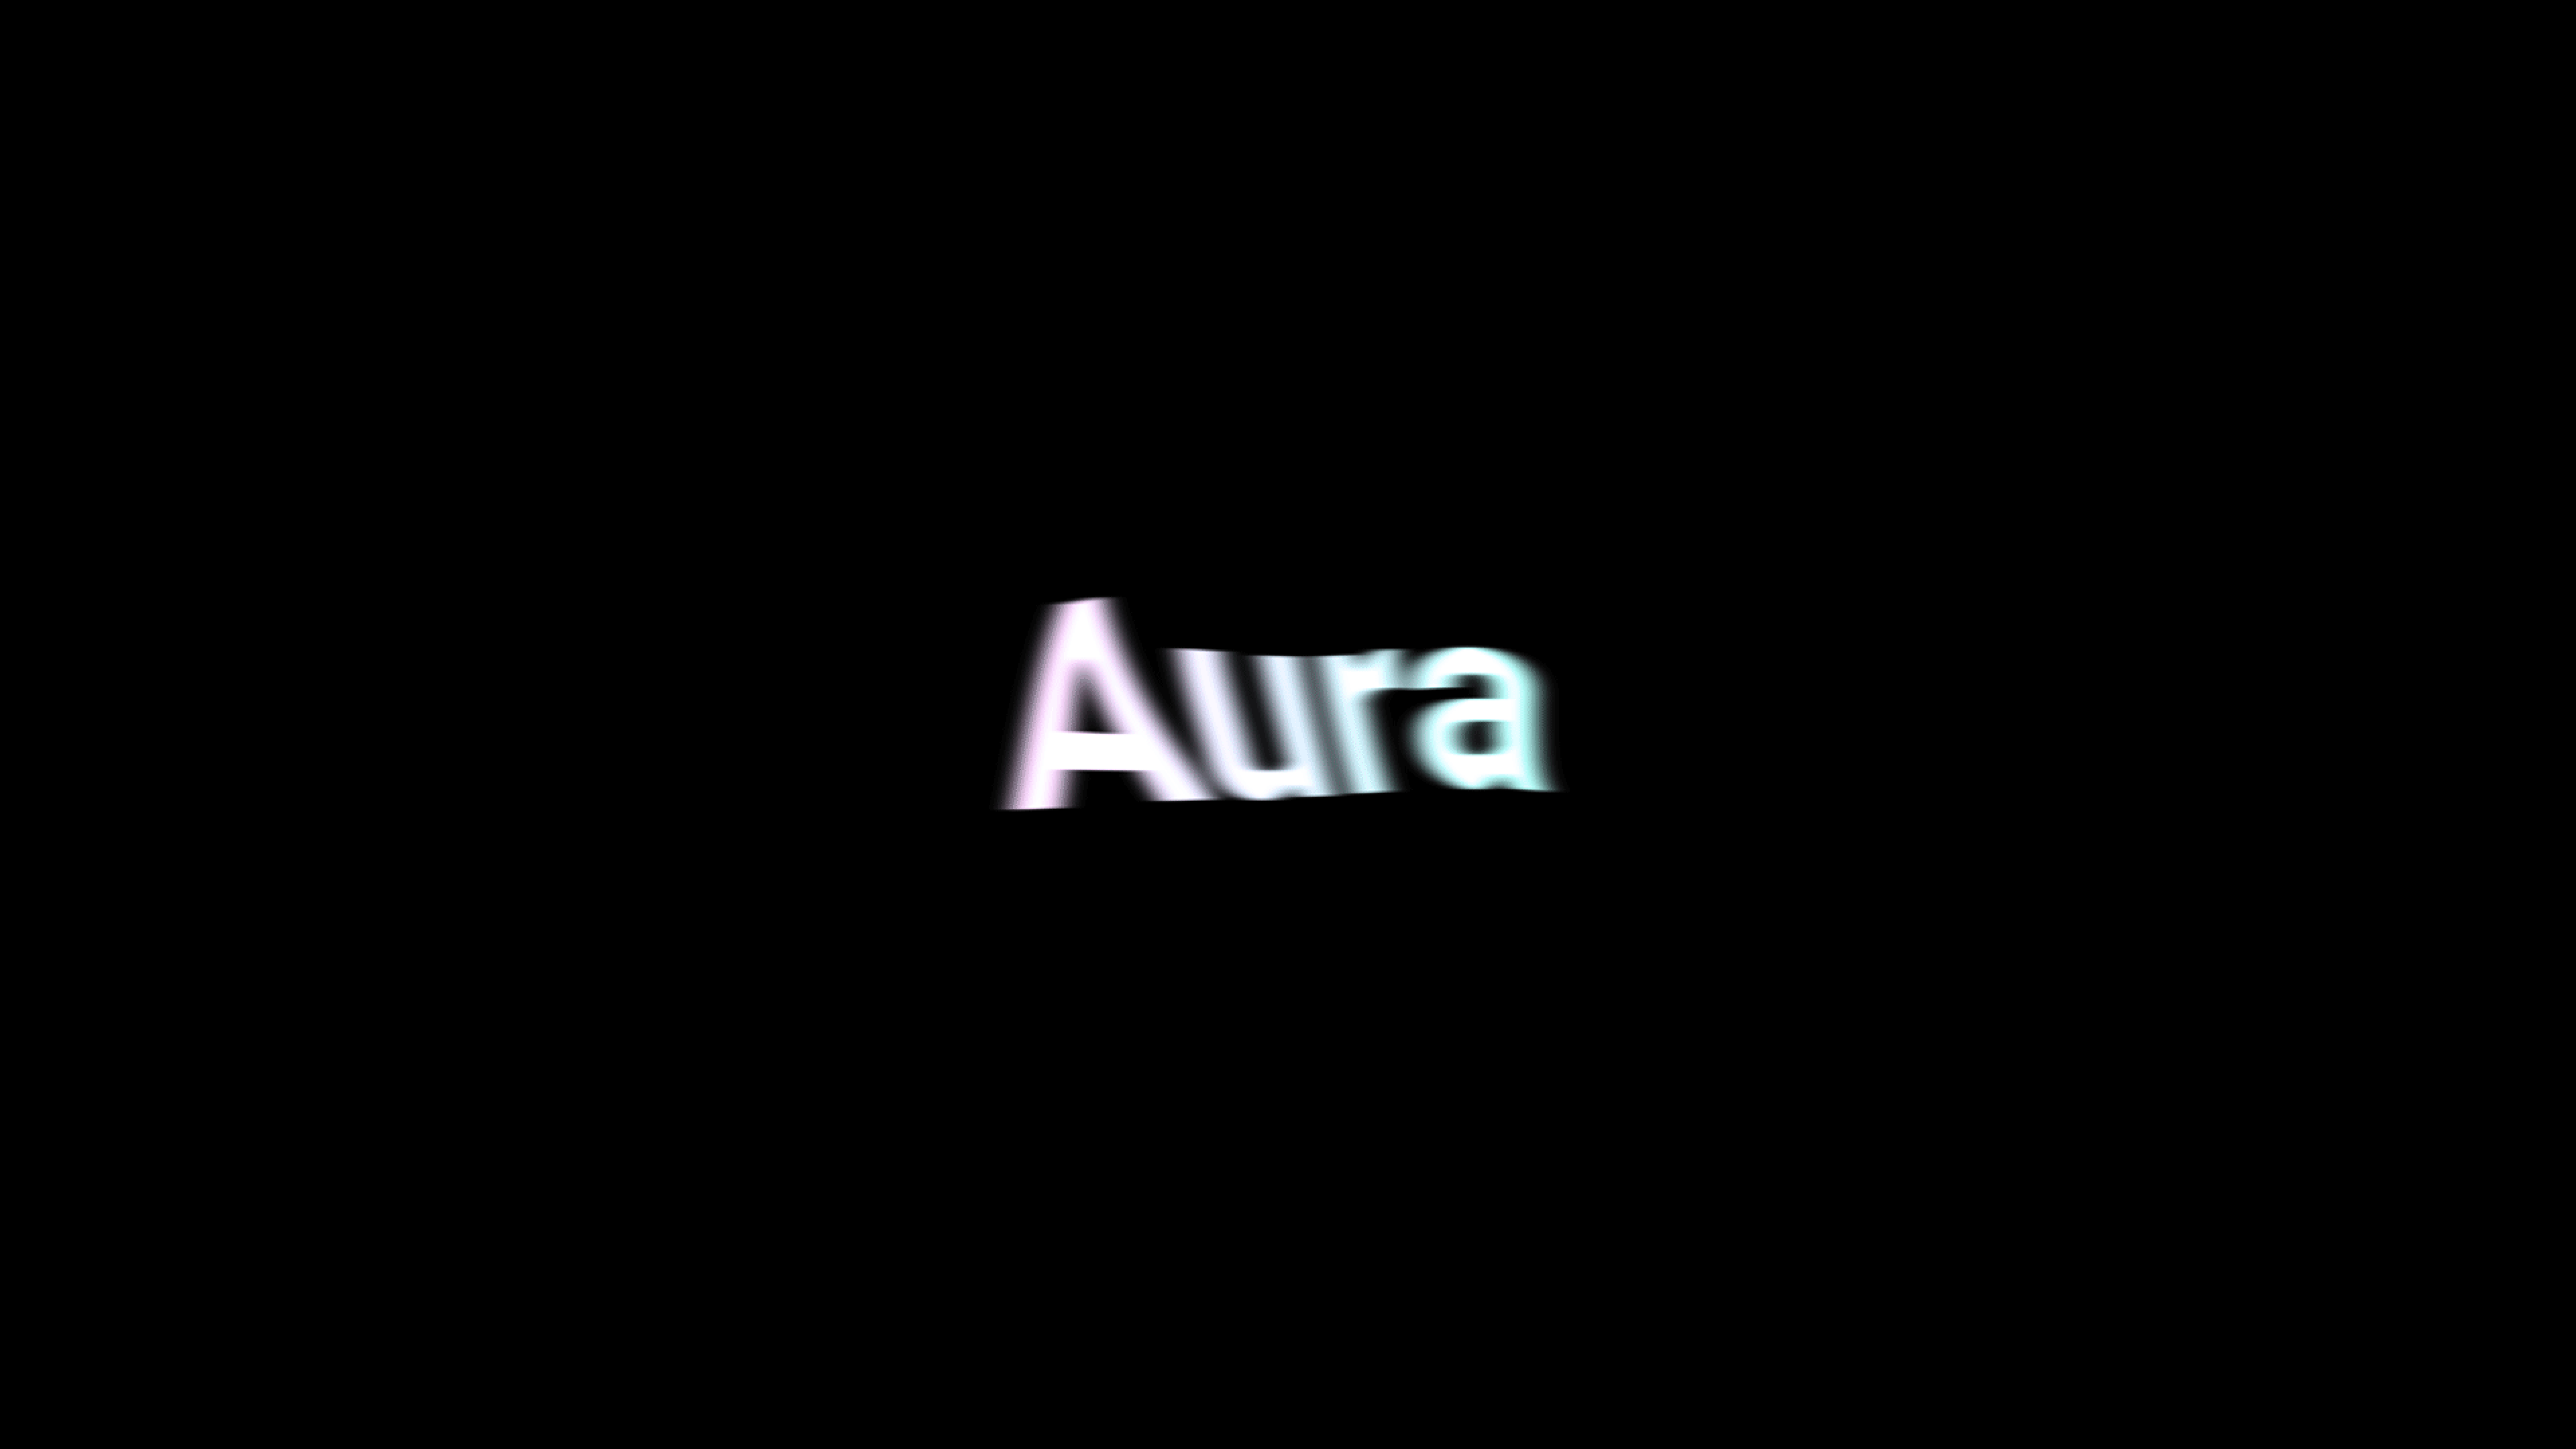 Aura - The Codeine Design